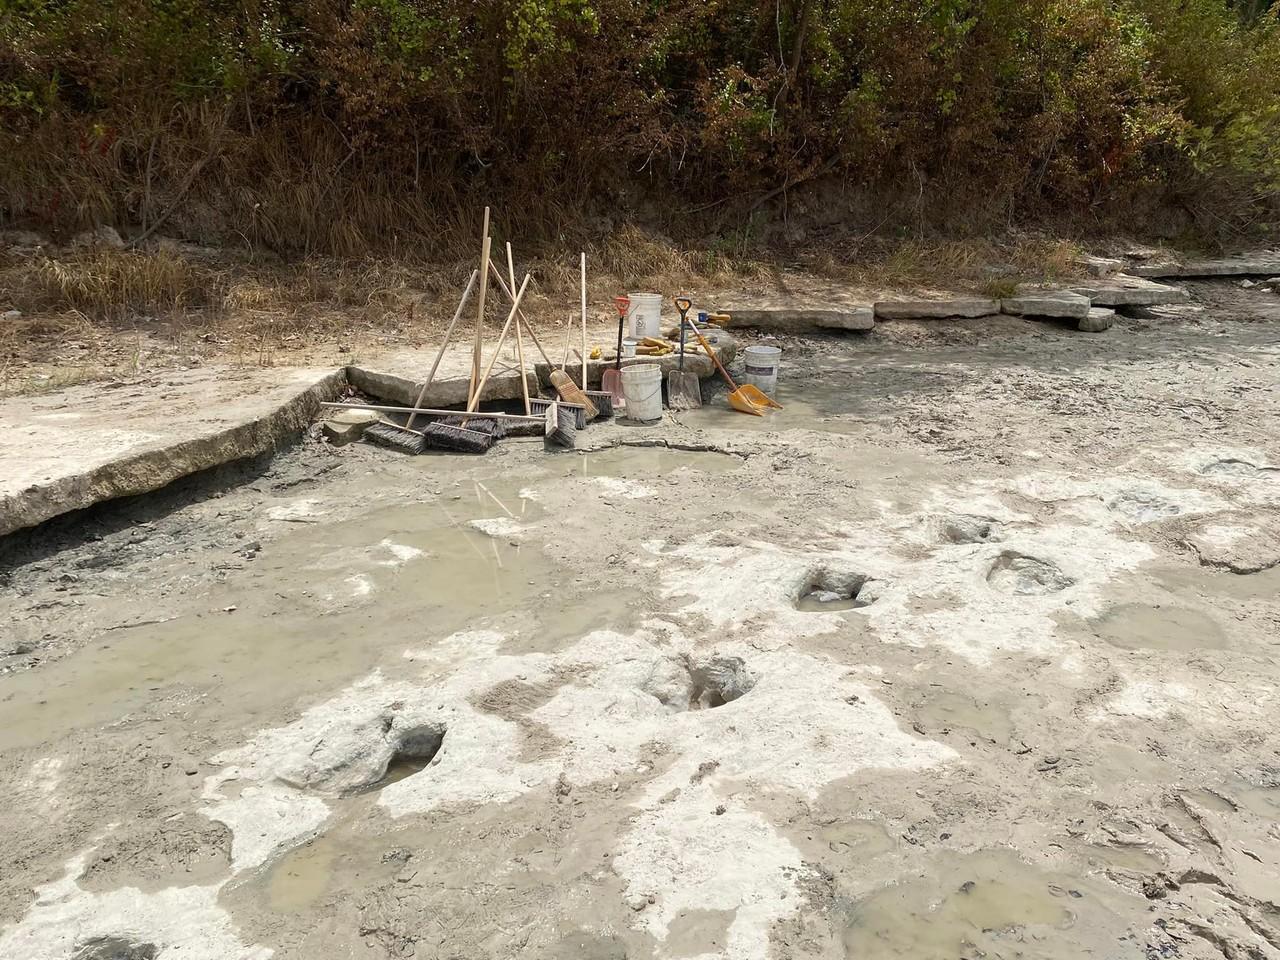 Pegadas de dinossauros reveladas por seca em rio que atravessa o Parque Estadual do Vale dos Dinossauros, Texas, Estados Unidos